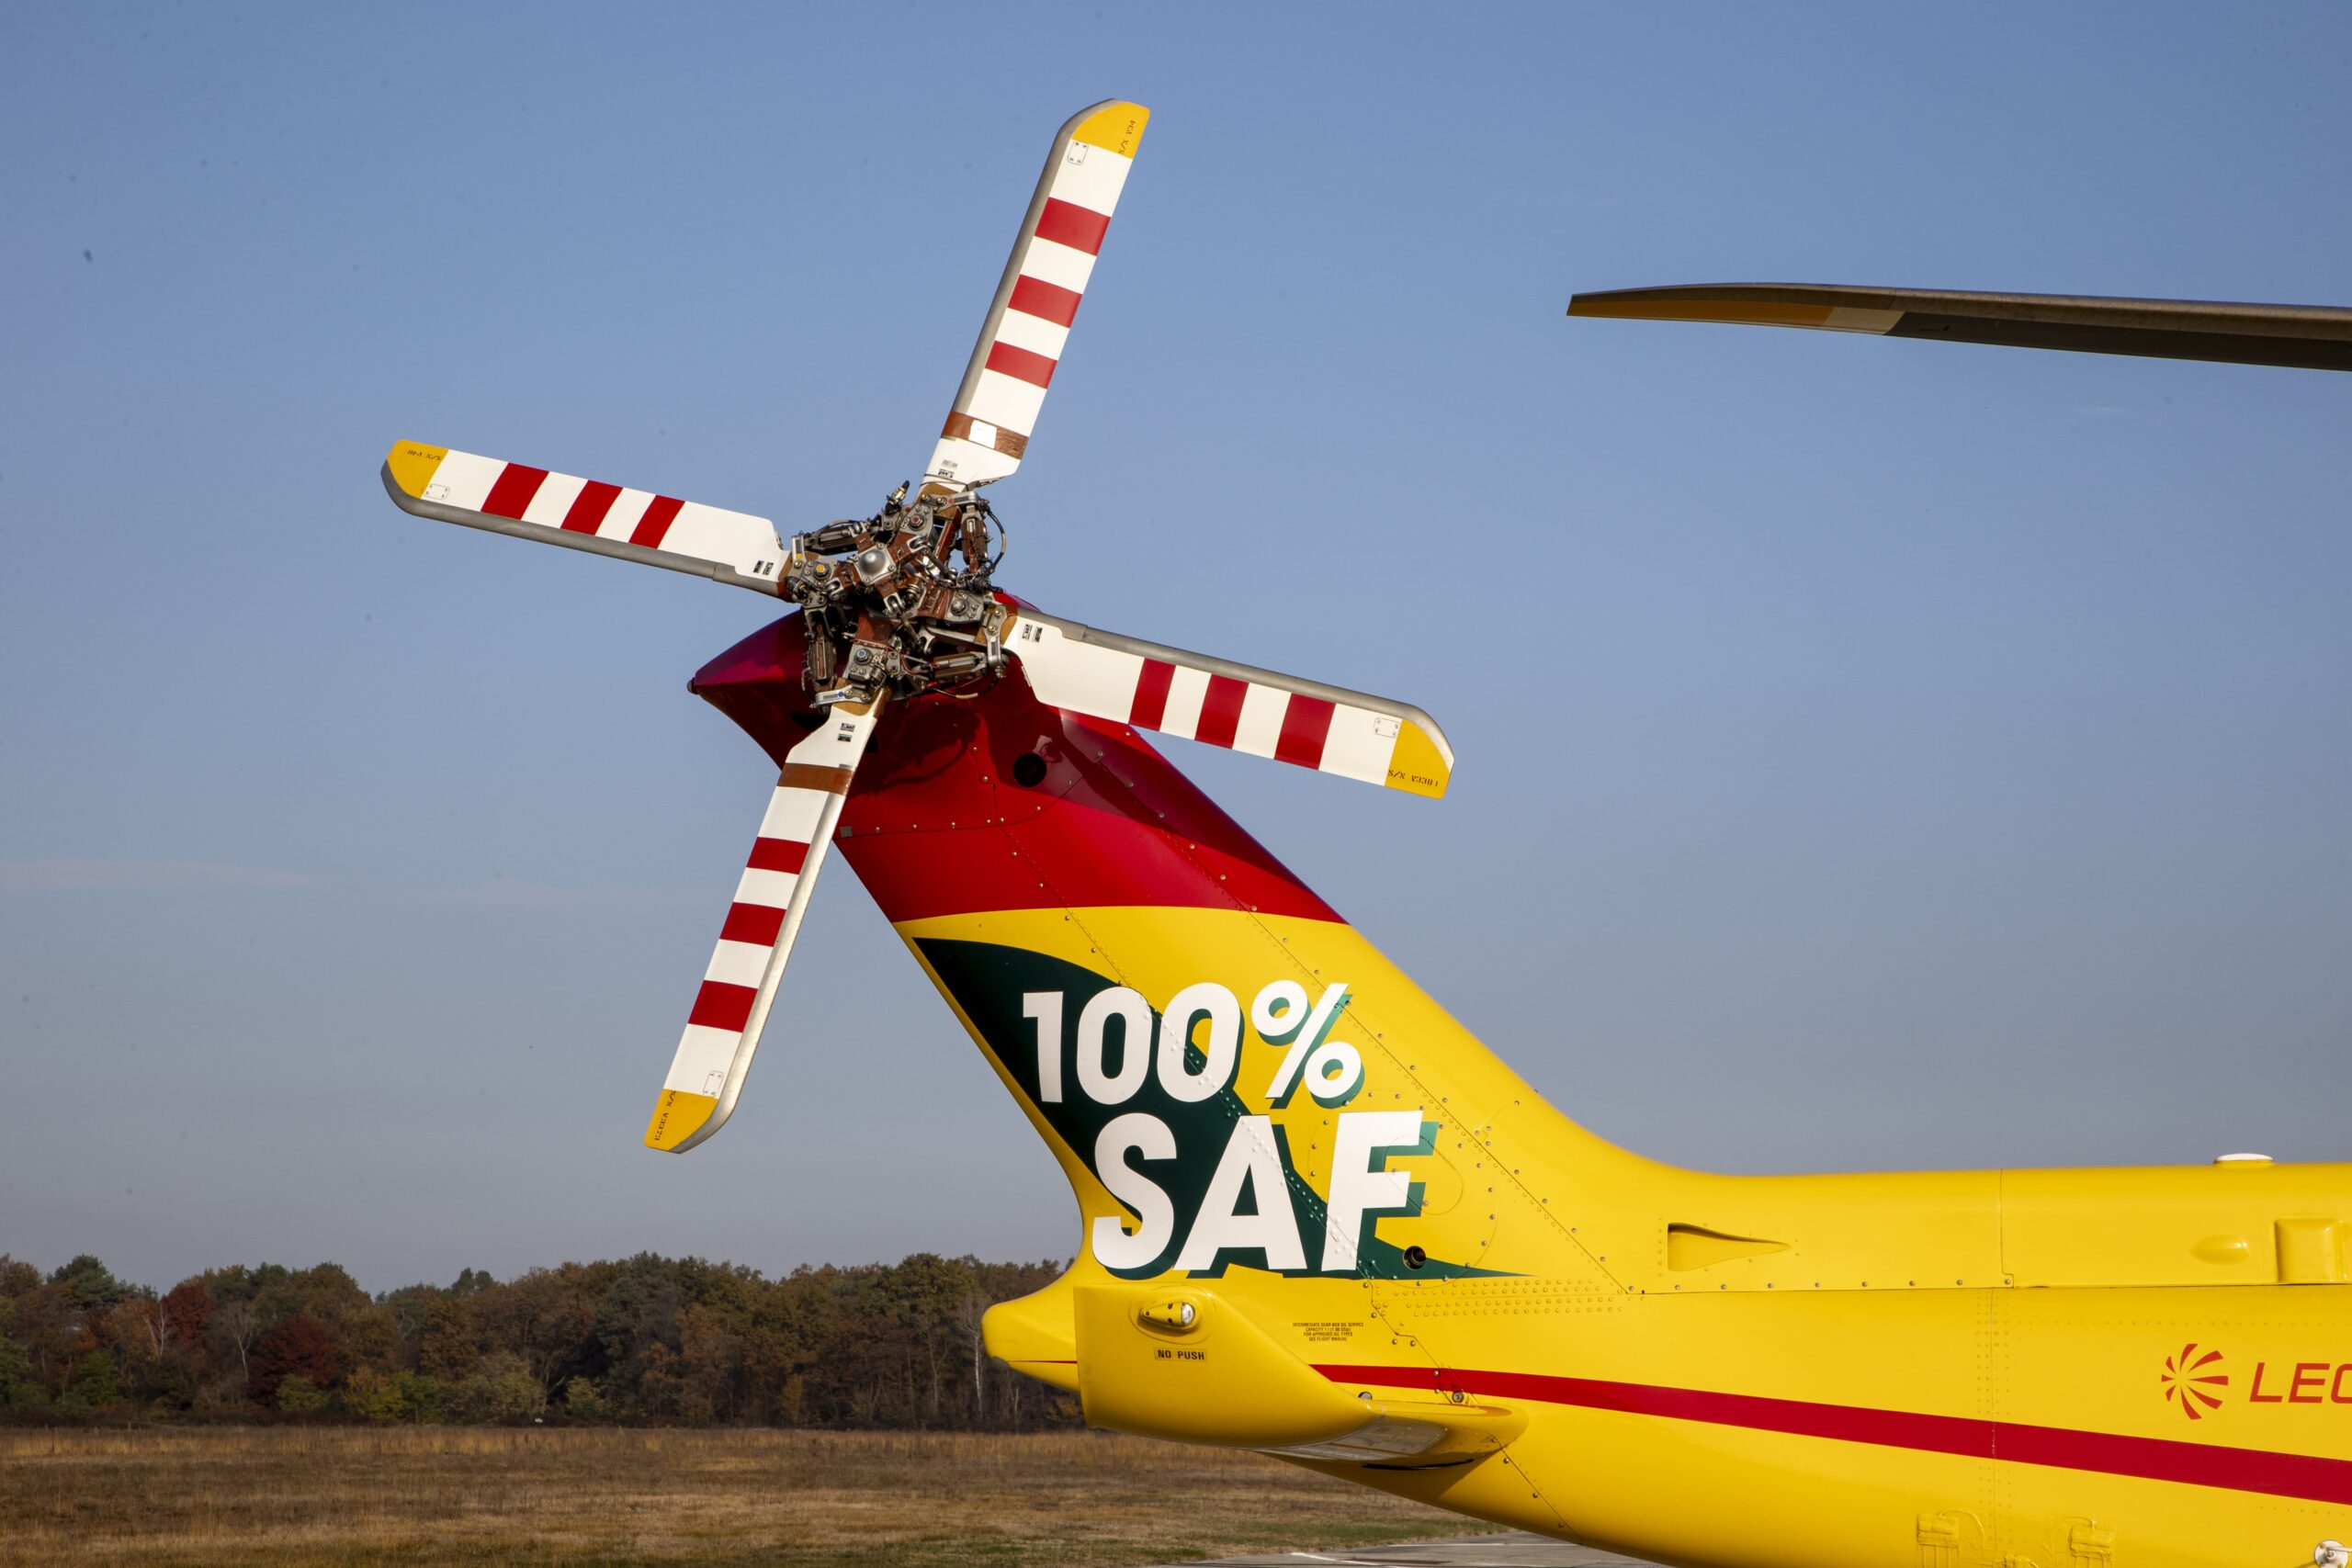 Featured image for “Leonardo e Pratt & Whitney Canada celebrano il primo volo con il 100% di carburante SAF per un elicottero AW139”